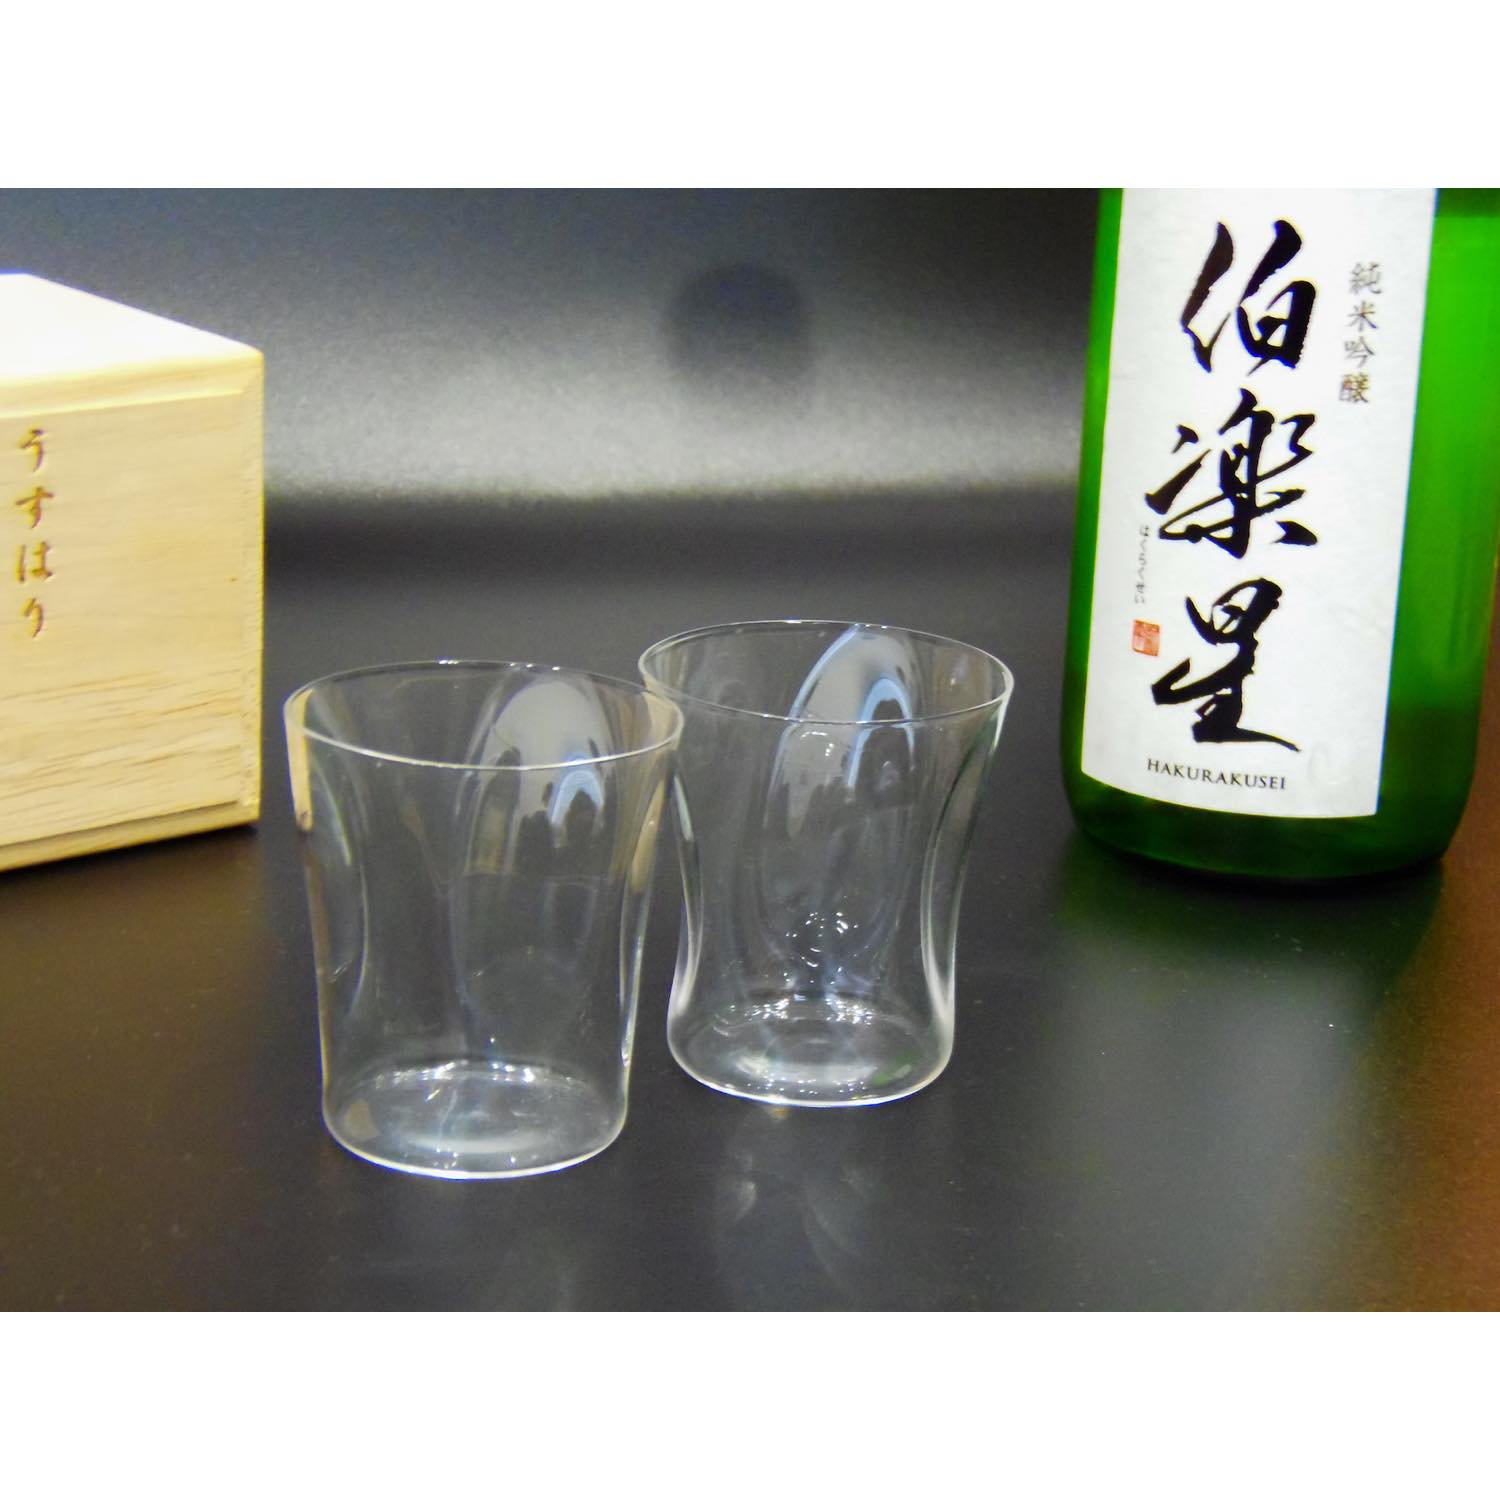 うすはり SHIWA グラス 五勺盃 ペア (2個組) 木箱入り 松徳硝子